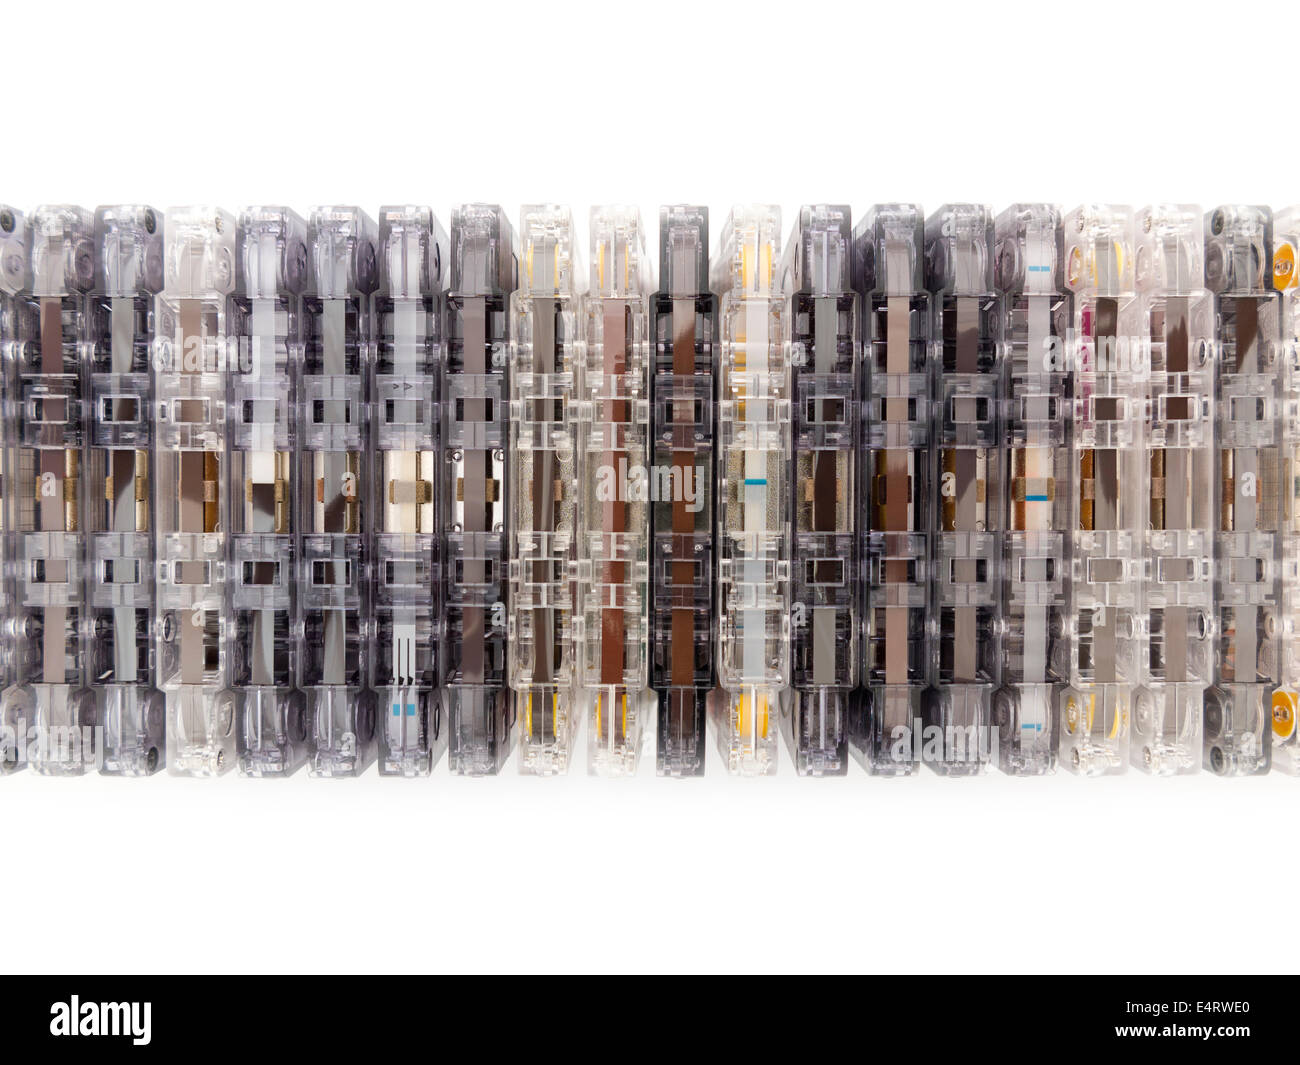 Una fila impilata di miste di compact cassette audio sul bordo, alcuni mostrano un nastro, altri leader di nastro, il tutto in una varietà di colori Foto Stock